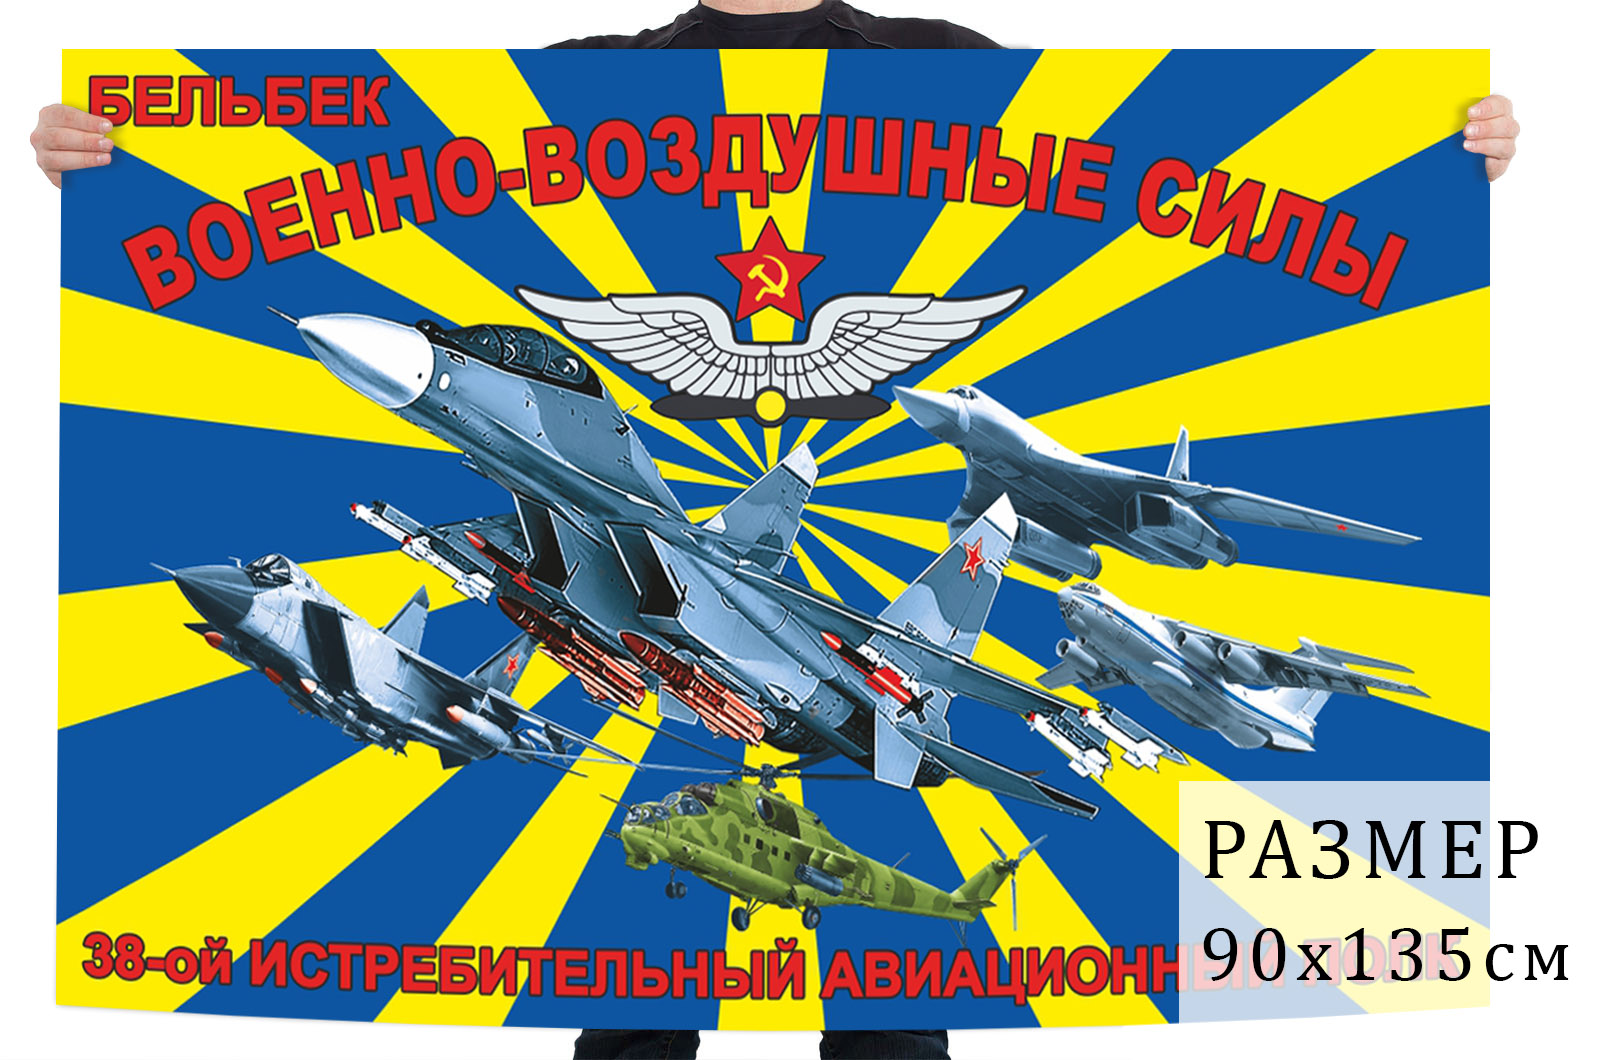 Купить в Москве флаг 38-ой истребительный авиационный полк ВВС